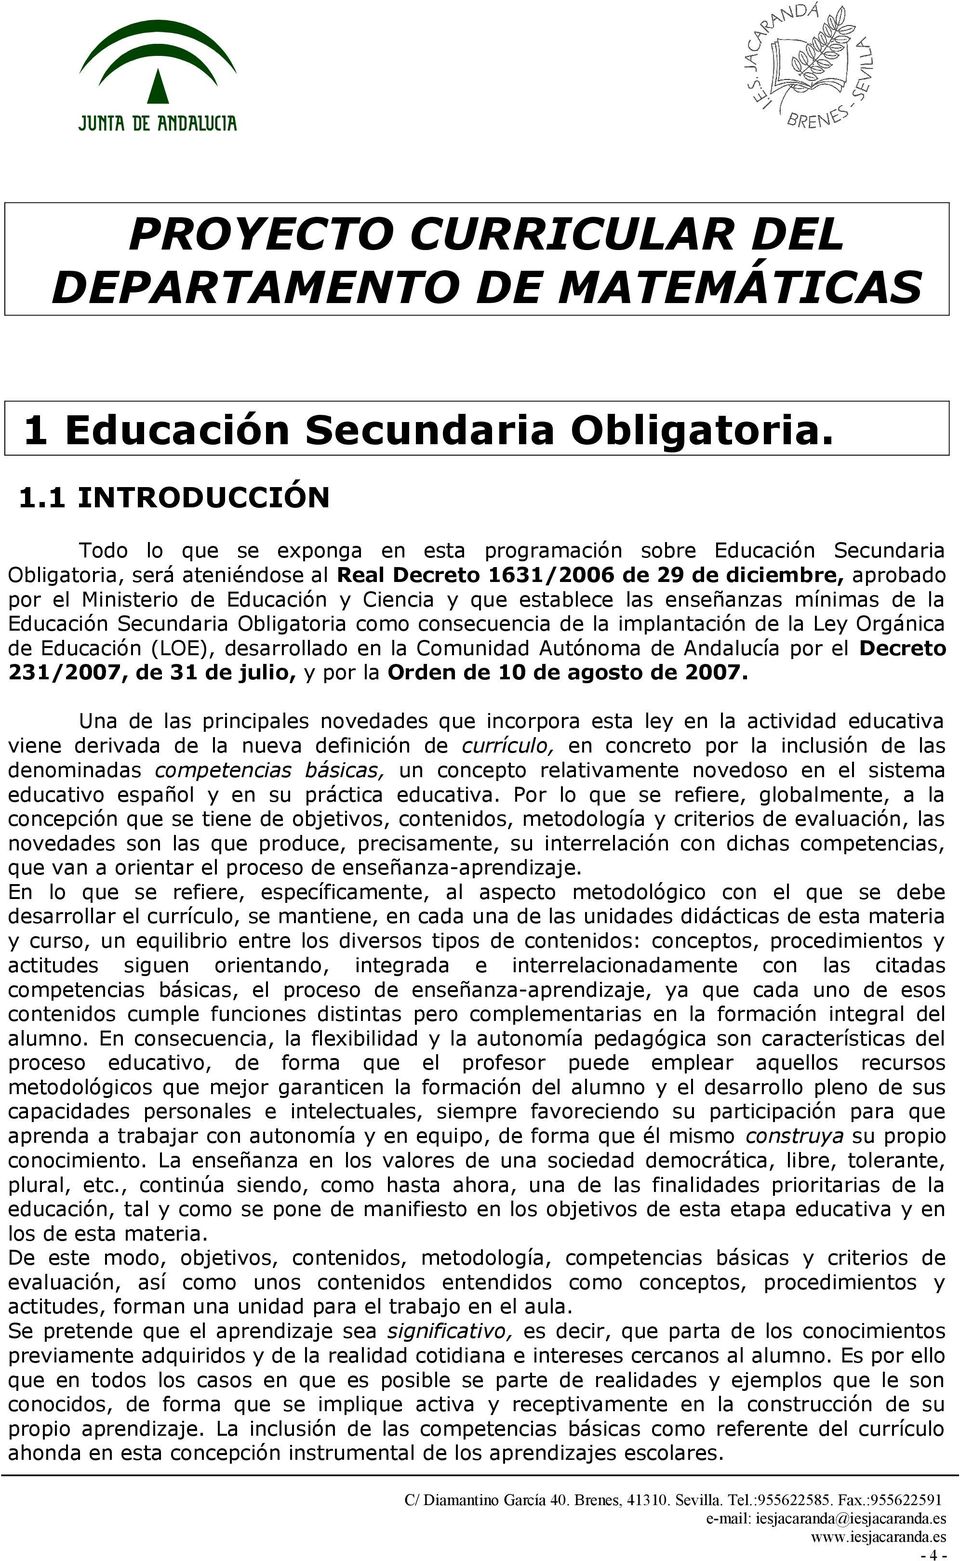 1 INTRODUCCIÓN Todo lo que se exponga en esta programación sobre Educación Secundaria Obligatoria, será ateniéndose al Real Decreto 1631/2006 de 29 de diciembre, aprobado por el Ministerio de